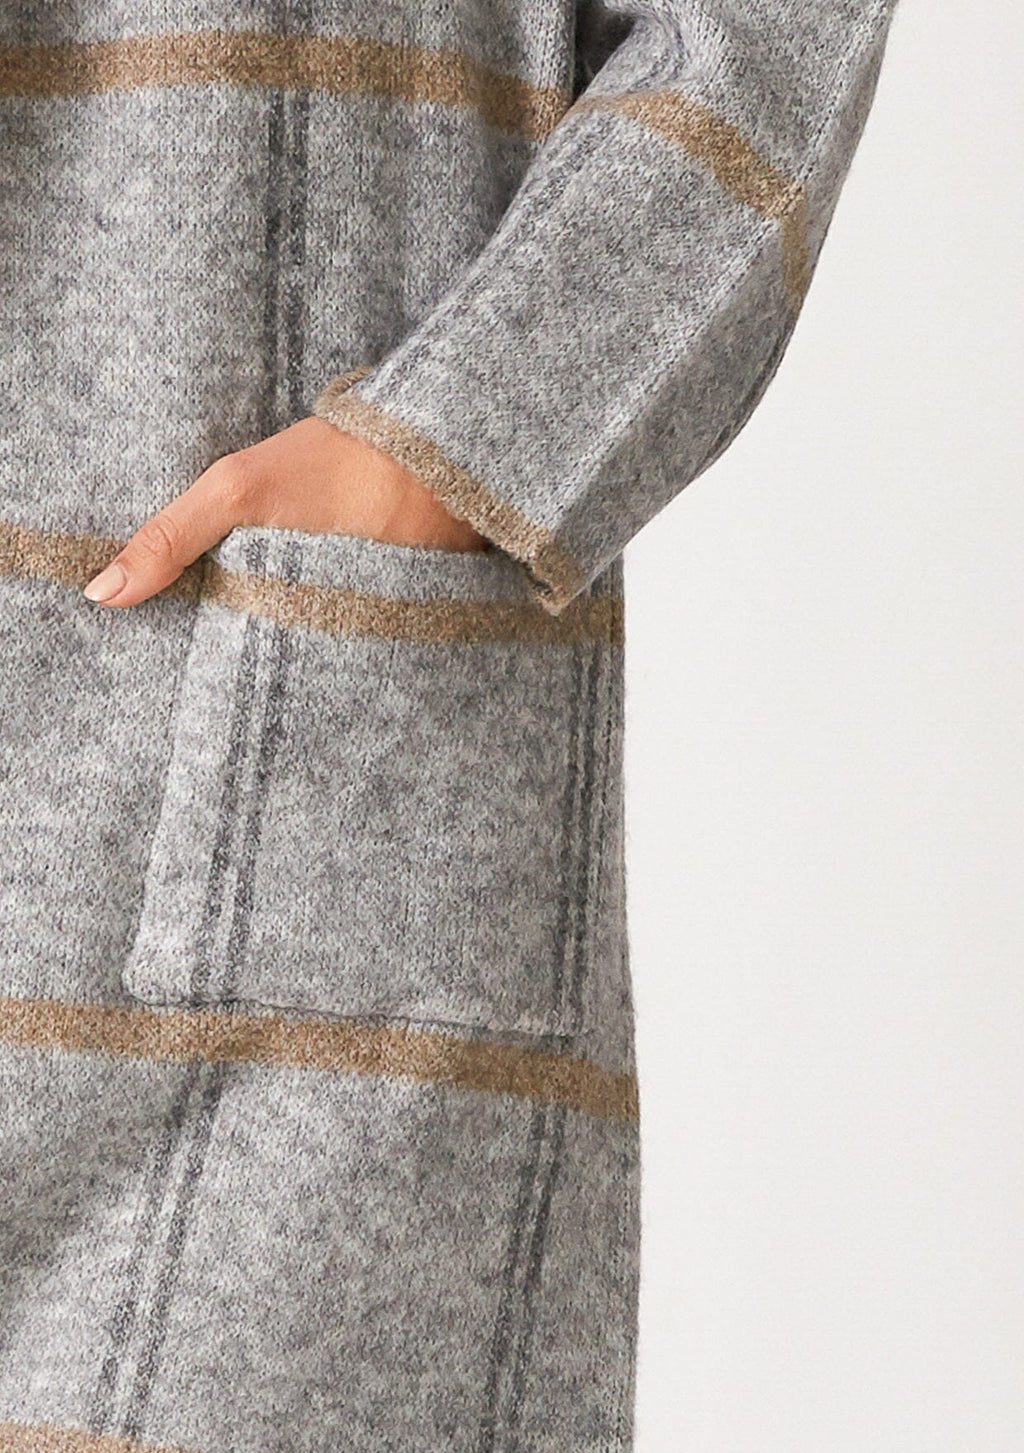 Women's Grey Shawl Collar Cardigan + Pockets